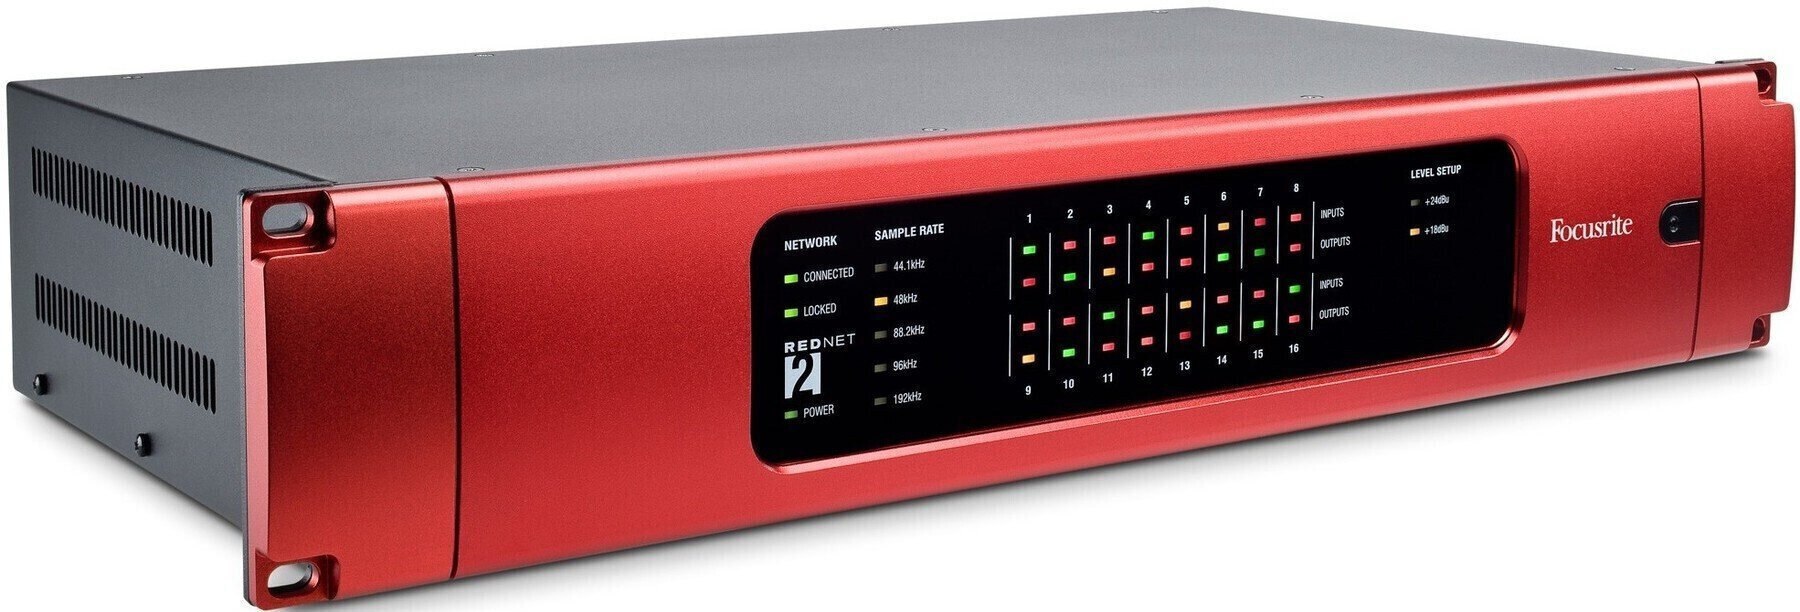 Ethernet-audioomzetter - geluidskaart Focusrite REDNET2